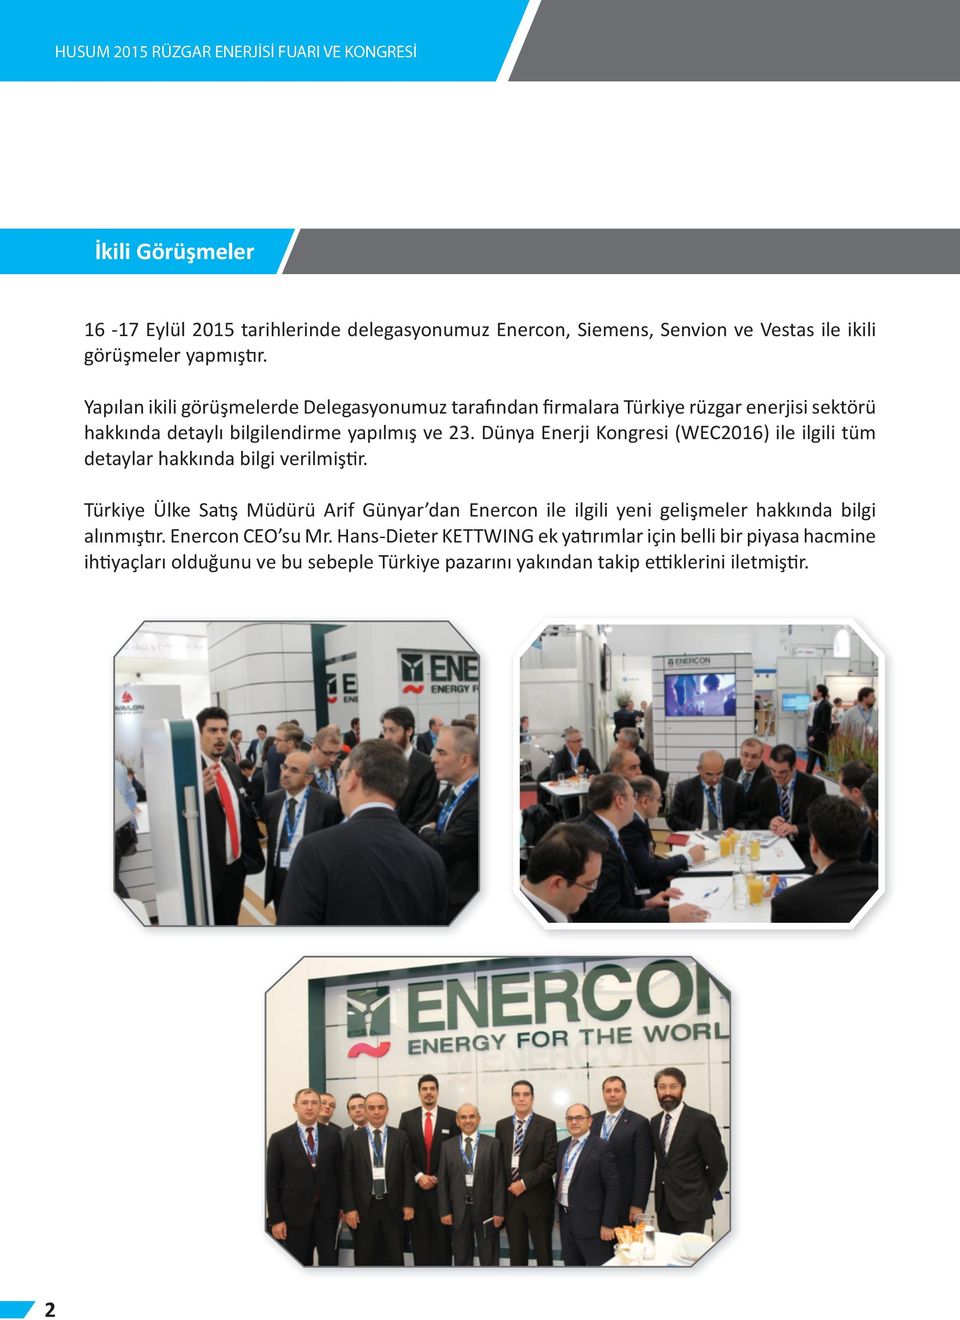 Dünya Enerji Kongresi (WEC2016) ile ilgili tüm detaylar hakkında bilgi verilmiştir.